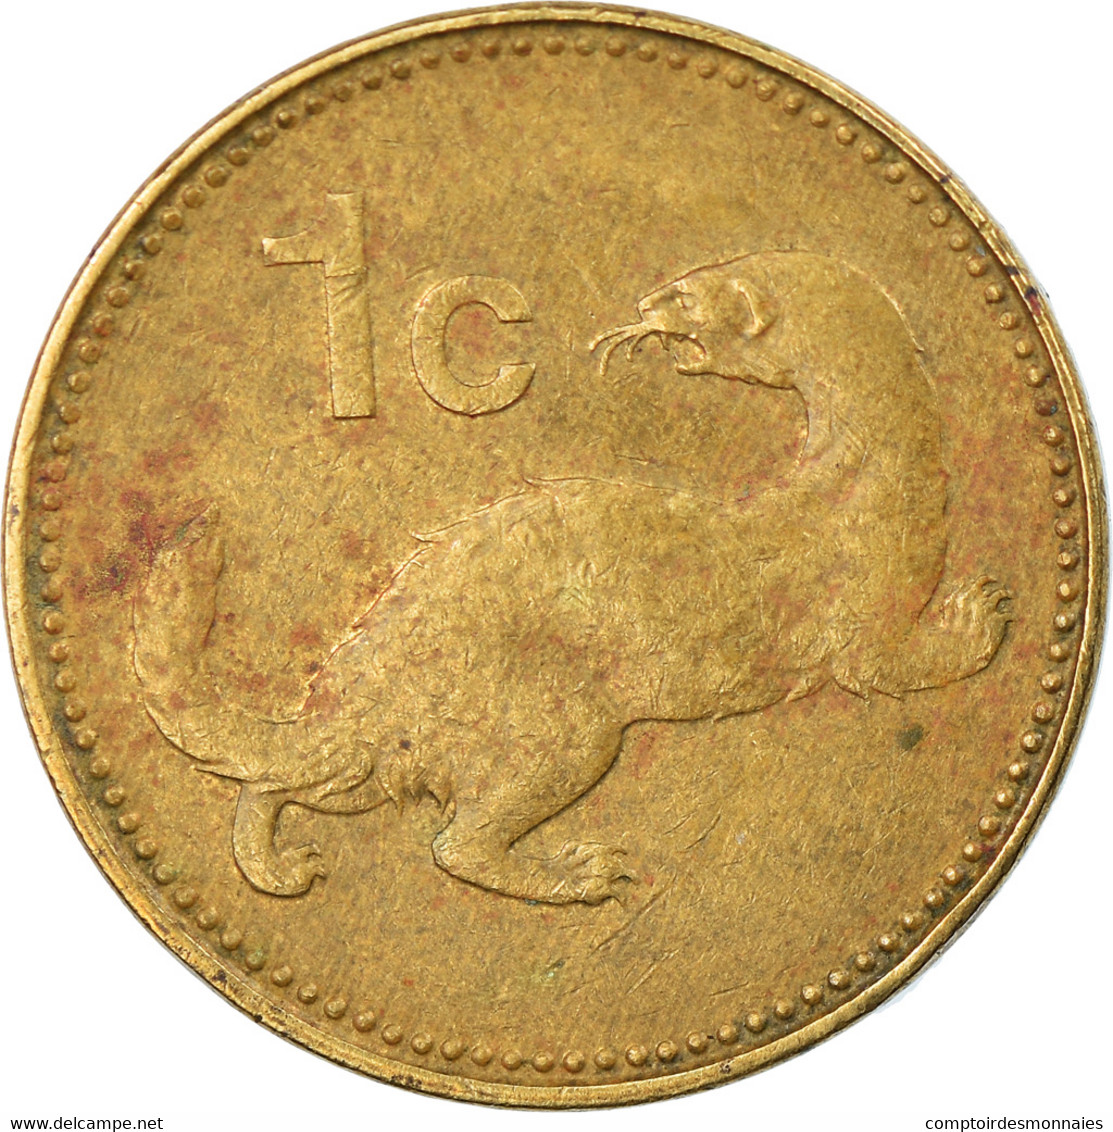 Monnaie, Malte, Cent, 1986, TB+, Nickel-brass, KM:78 - Malta (Ordre Van)